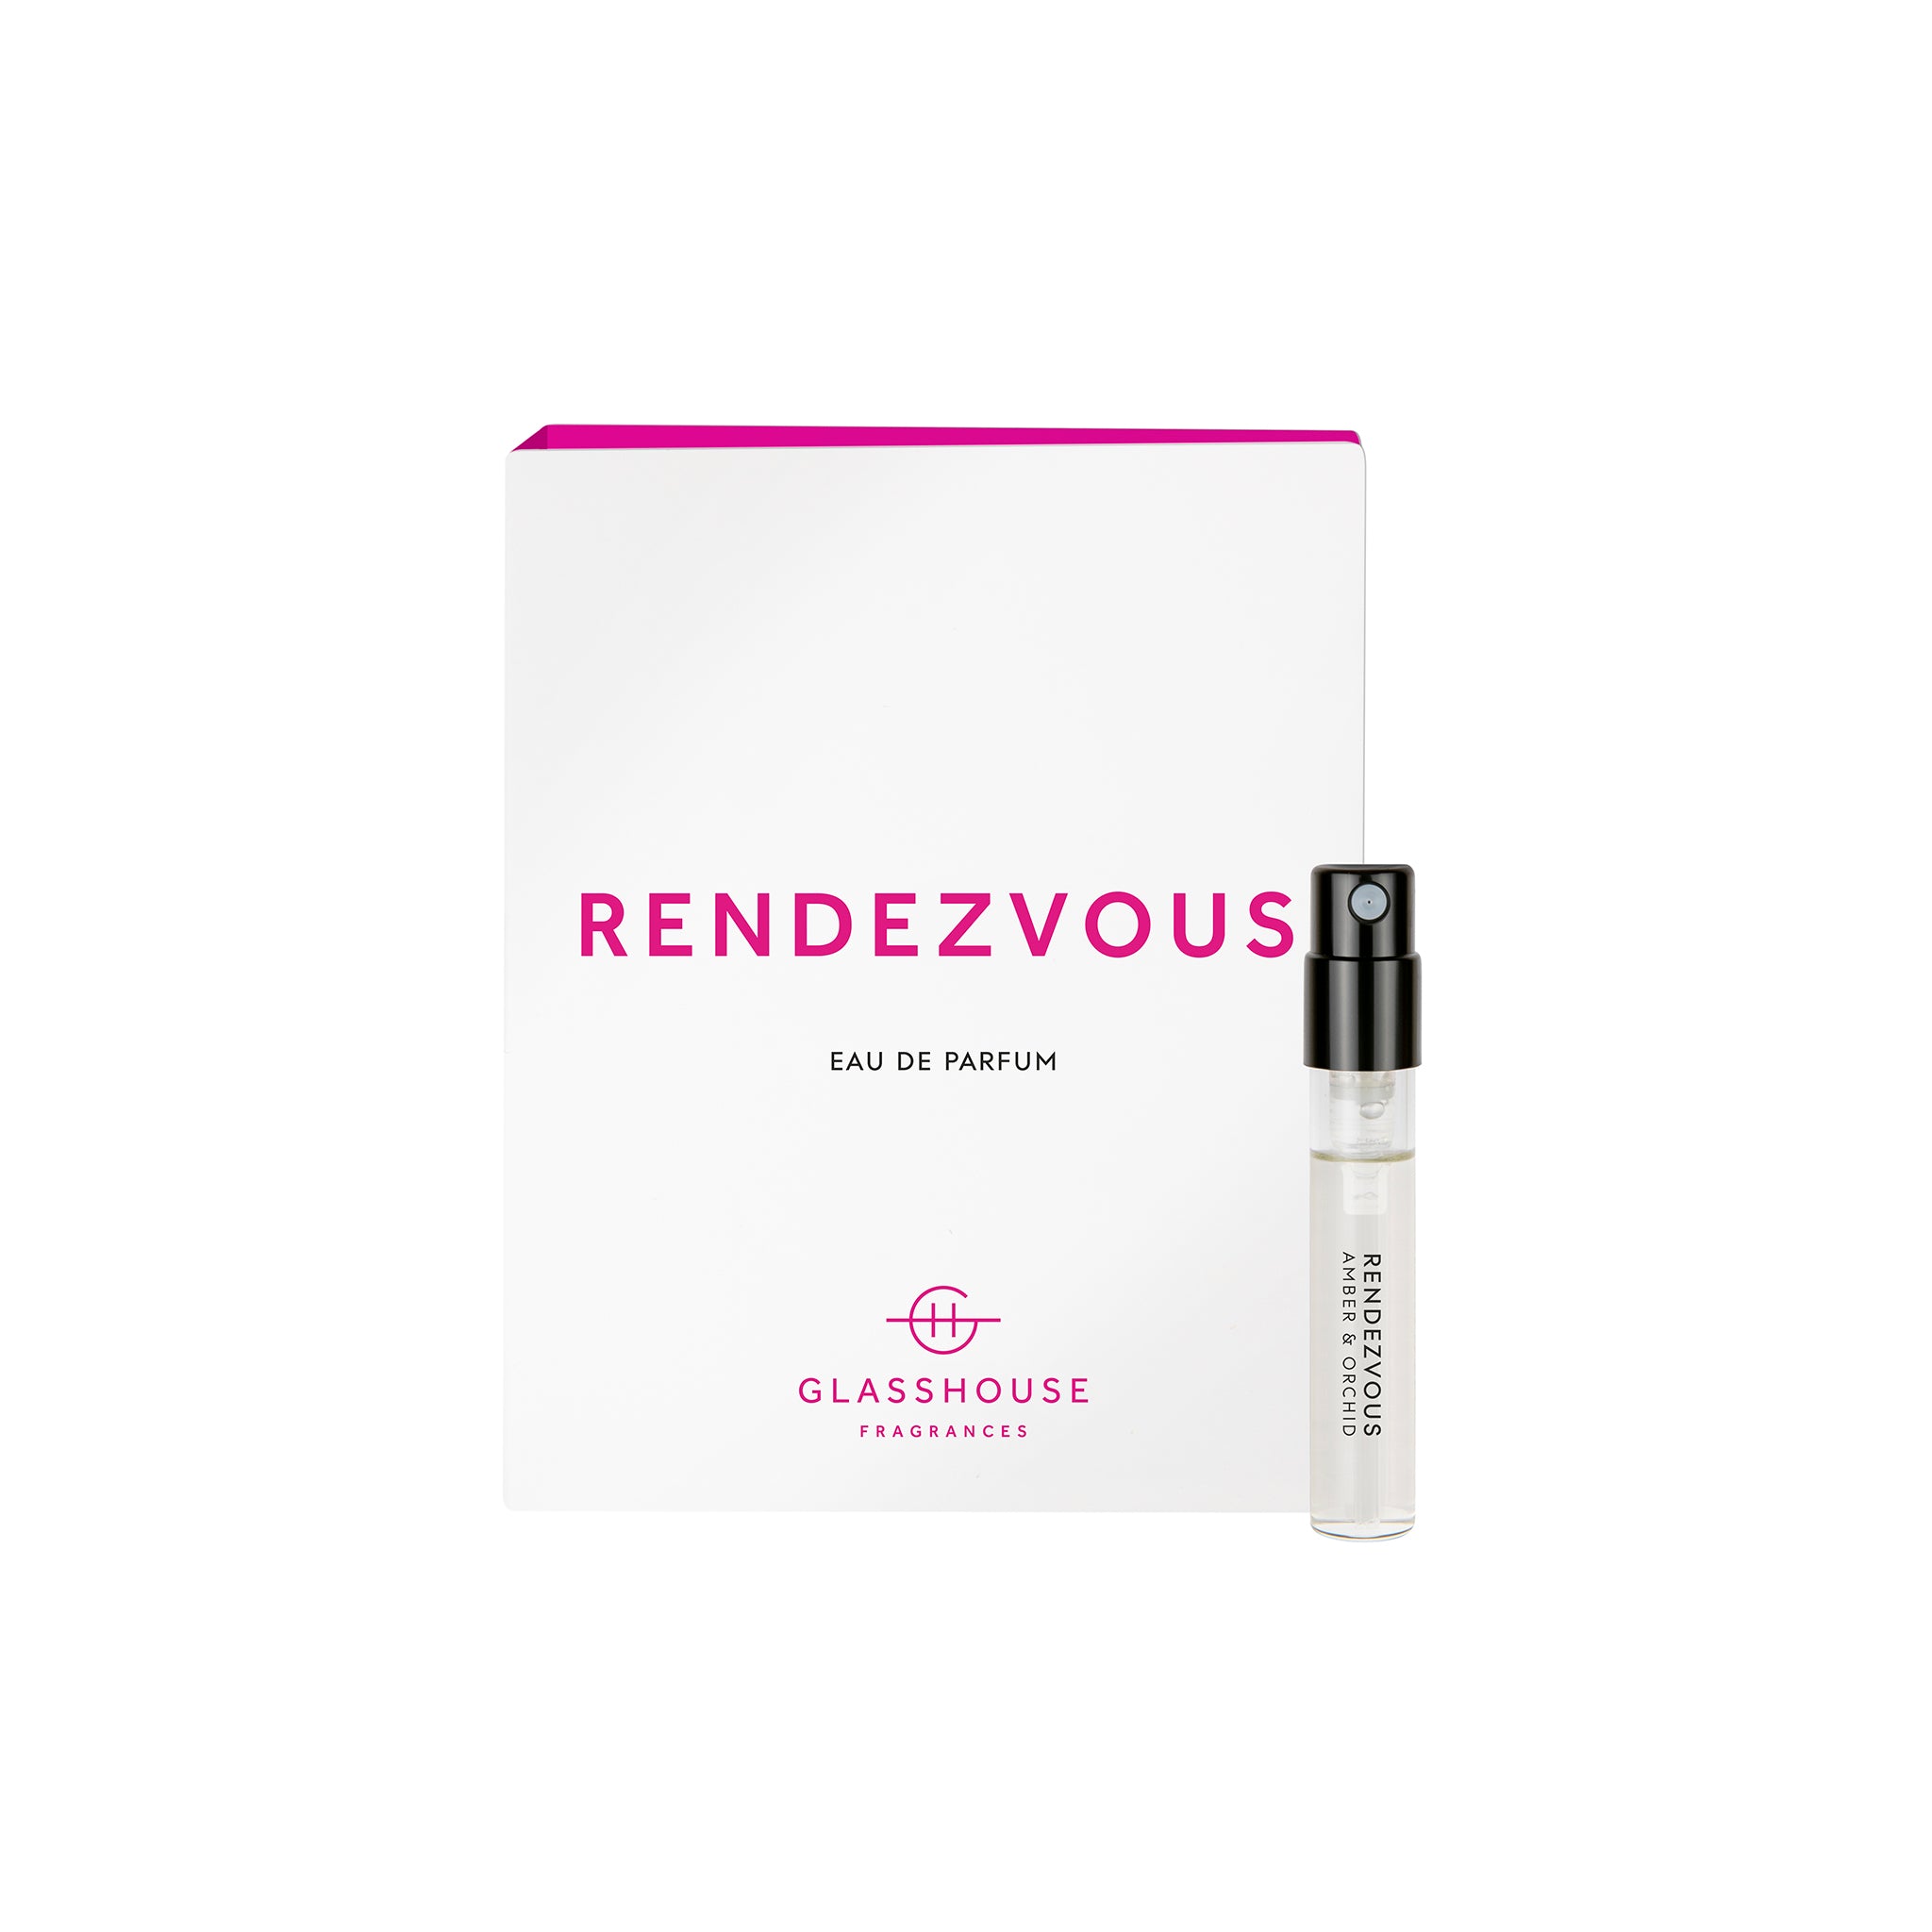 Glasshouse Fragrances Rendevous Amber and Orchid 1.8mL Eau de Parfum Sample with box